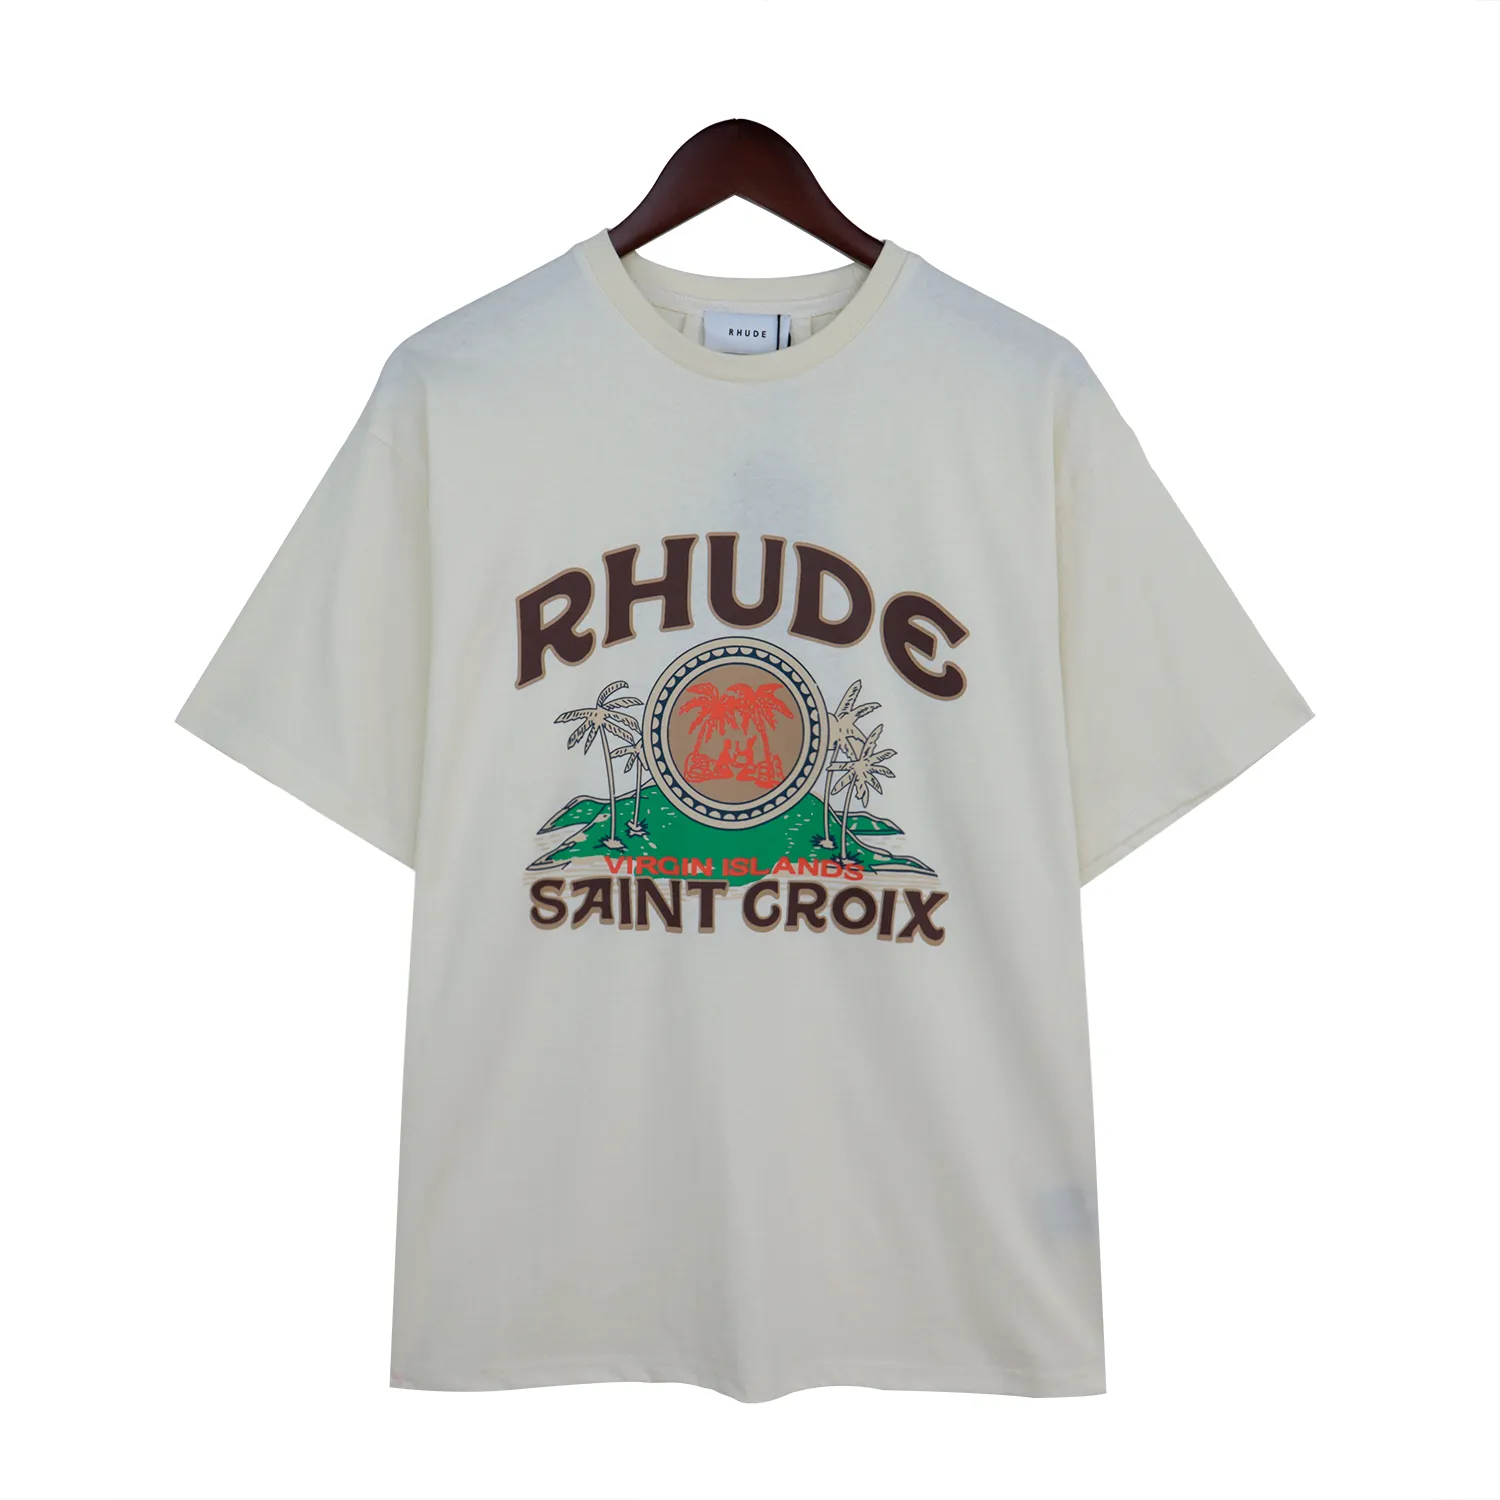 Rhudes 티셔츠 남성 디자이너 티셔츠 티 셔츠 티 운동 셔츠 남성 대형 티 셔츠 100%면 Rhudes Tshirts 빈티지 짧은 슬리브 미국 크기 Rh88754